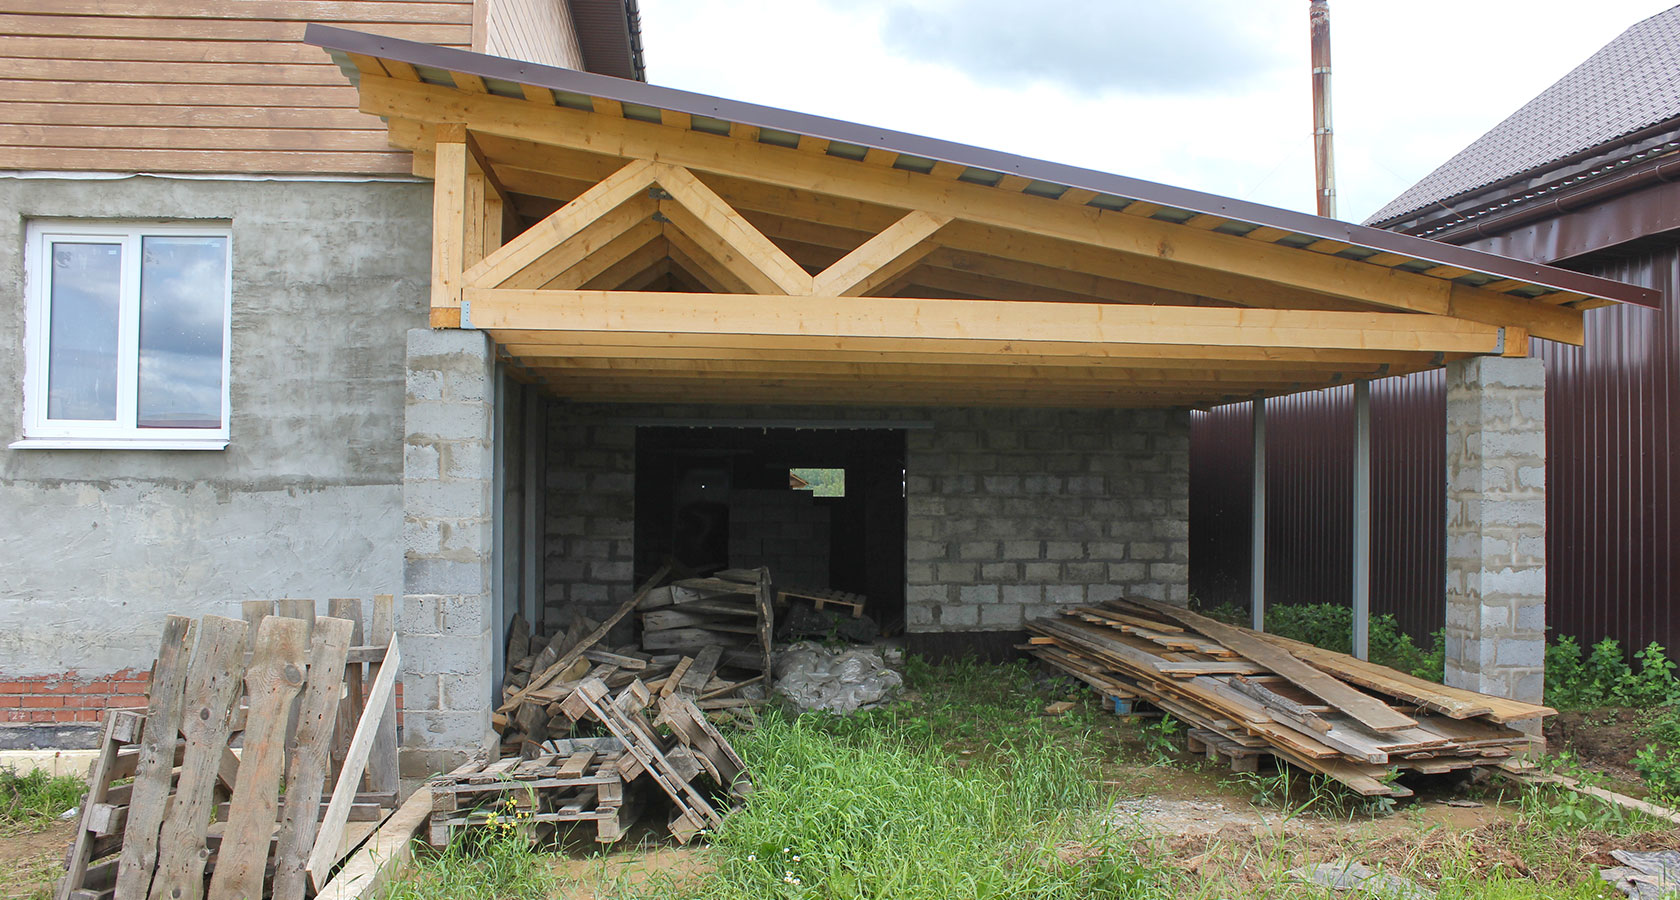 Как сделать односкатную крышу на сарай: Односкатная крыша для сарая: бюджетный вариант